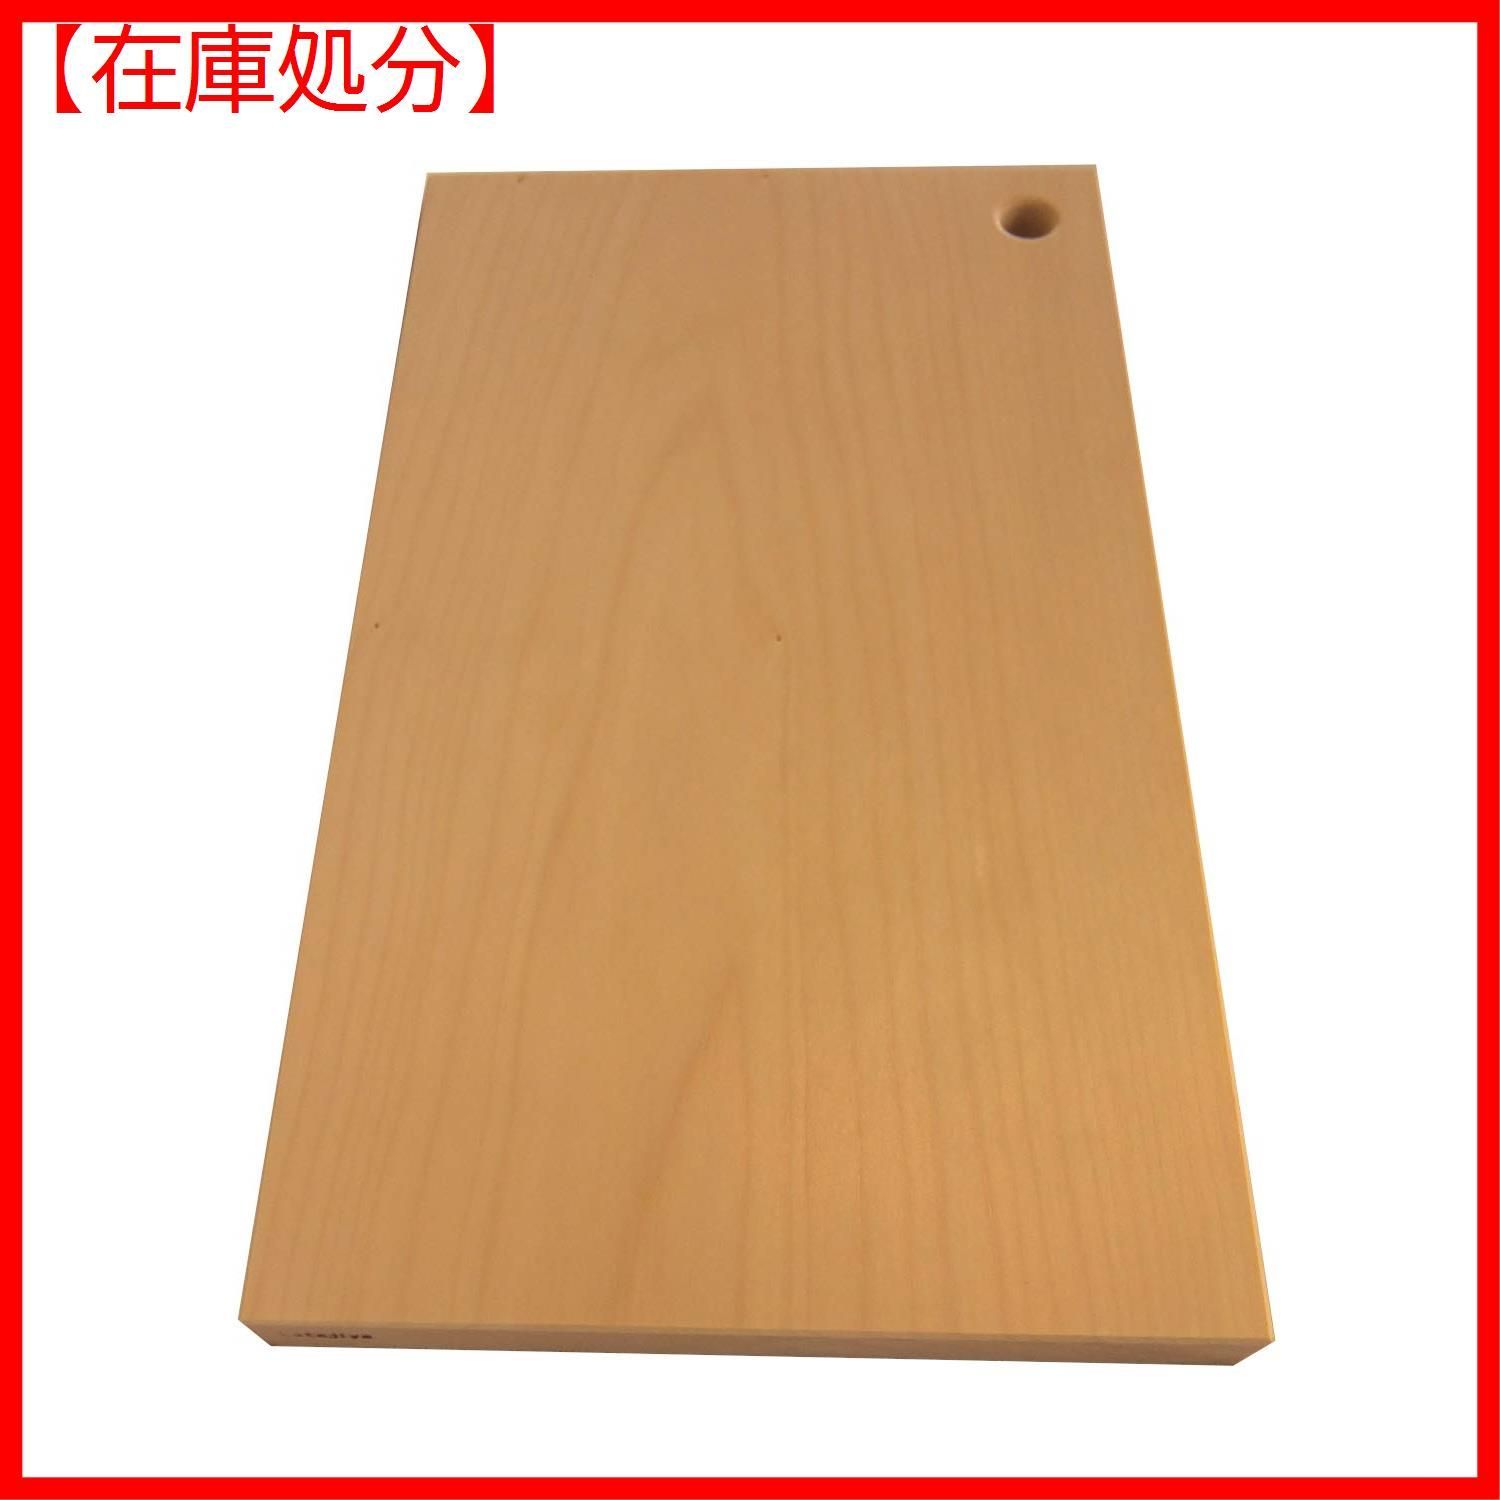 驚きの破格値SALE katajiya 木製 まな板 いちょう 天然木 一枚板 大 ...